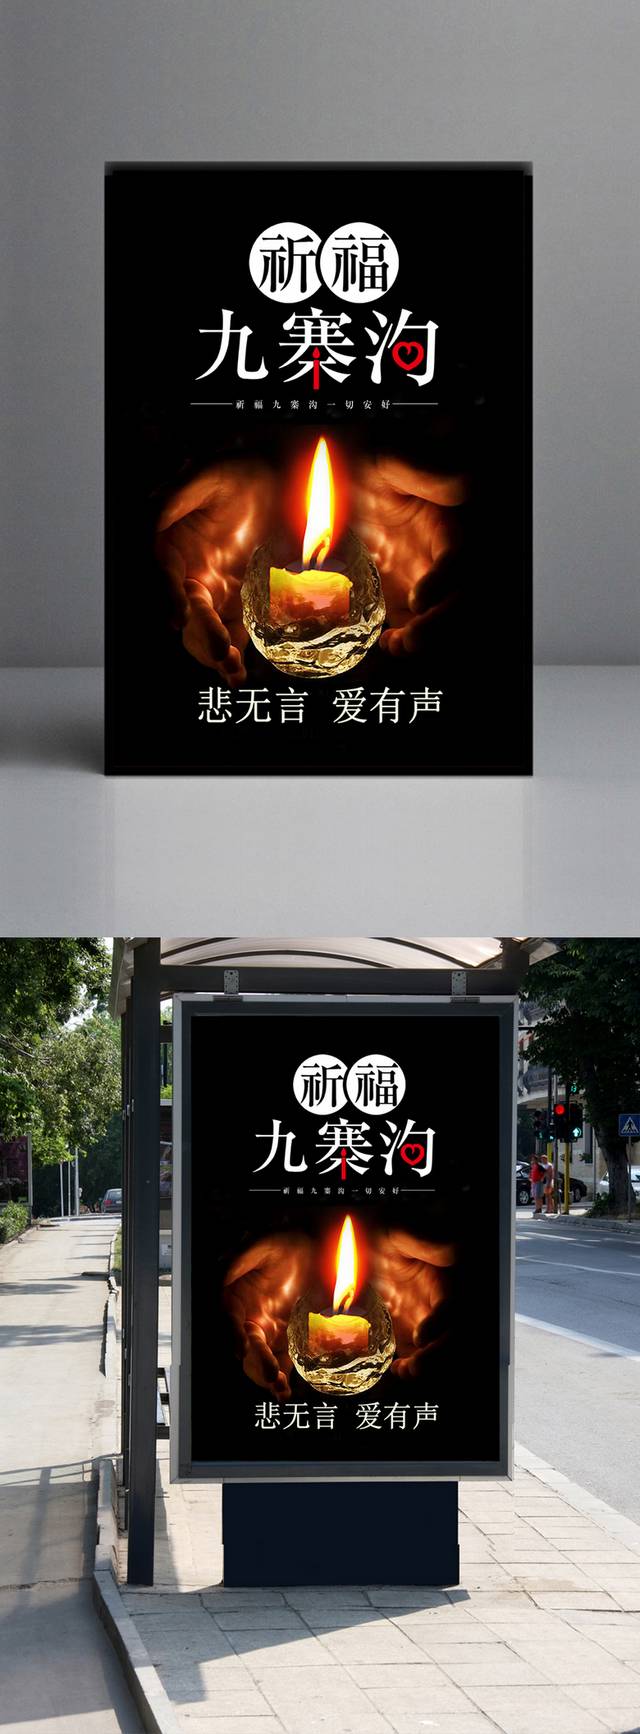 祈福四川地震海报